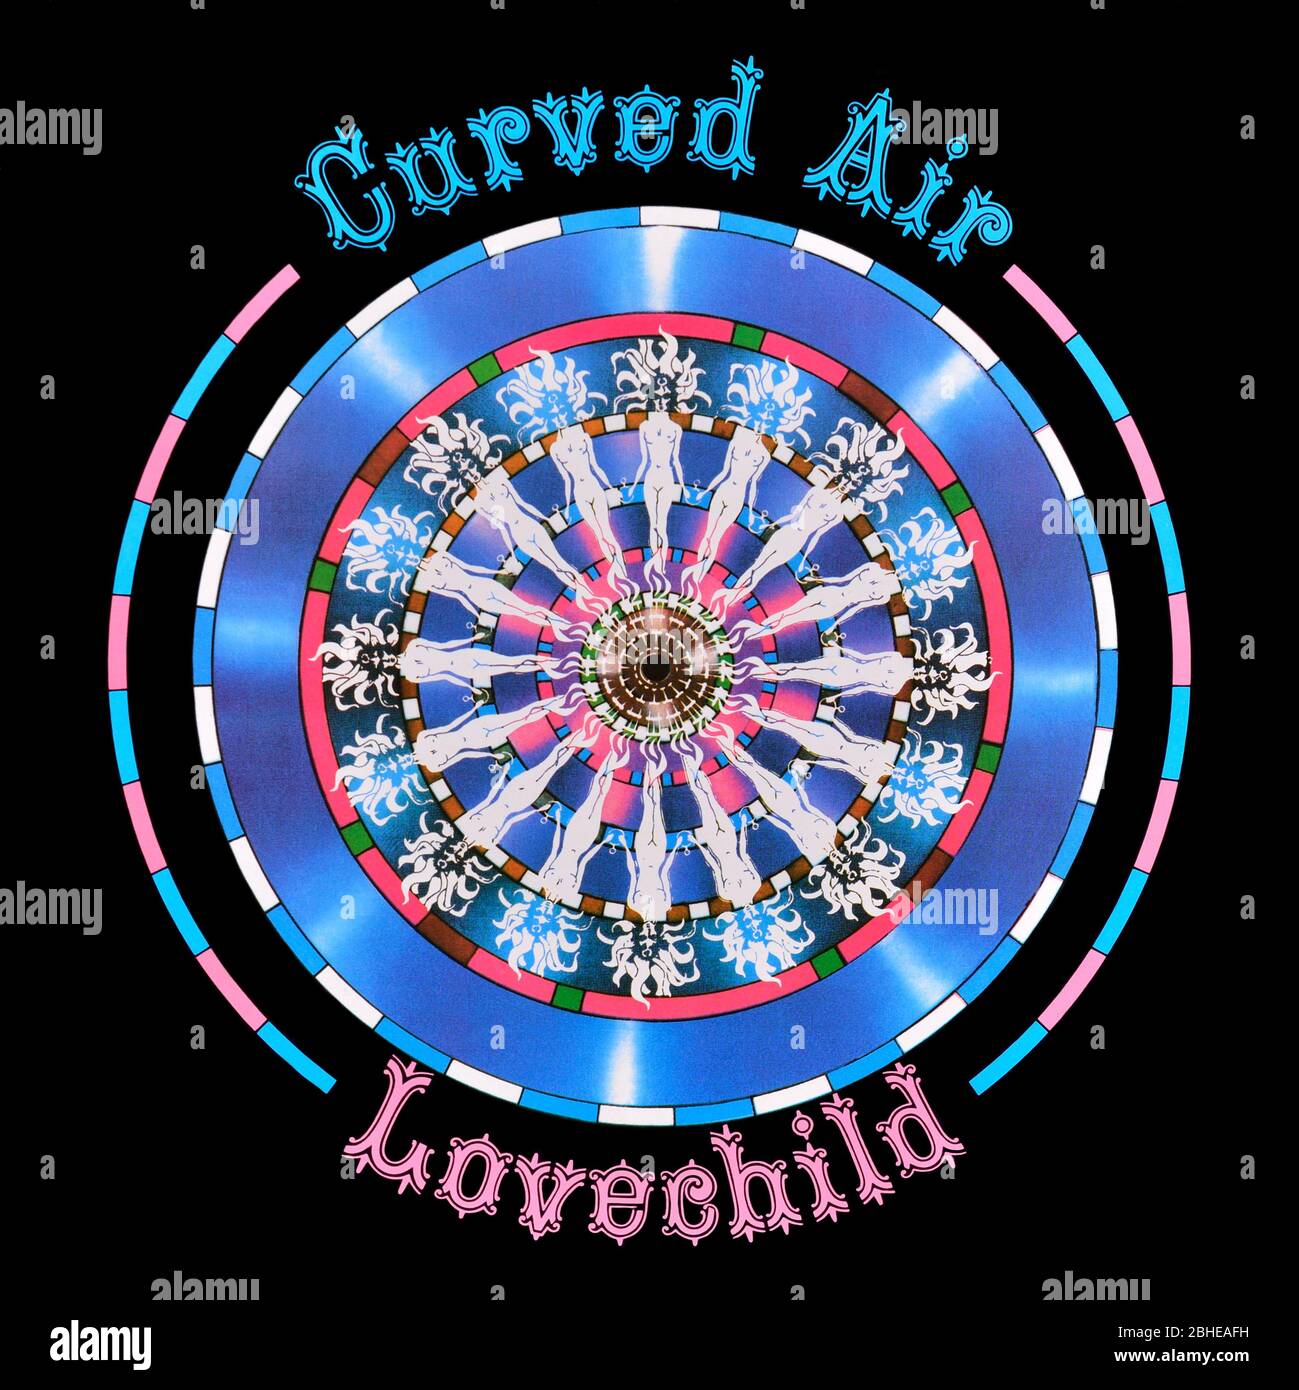 Curved Air - original vinyl album cover - Lovechild - 1990 Stock Photo